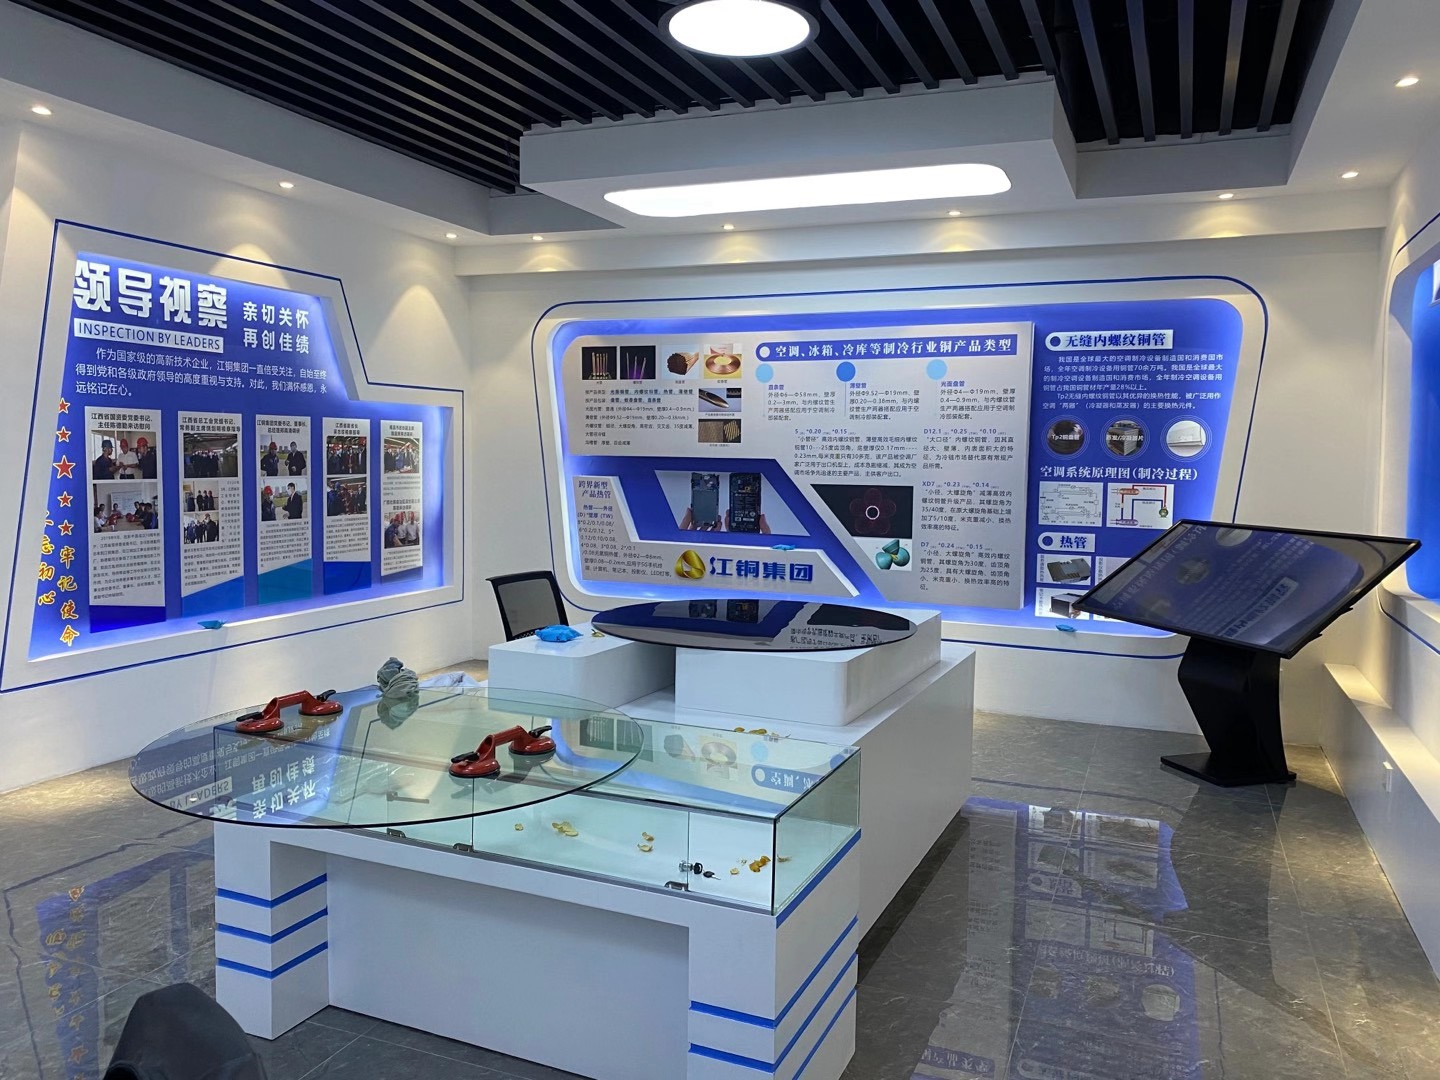 江西铜业集团有限公司劳模创新工作室设计方案